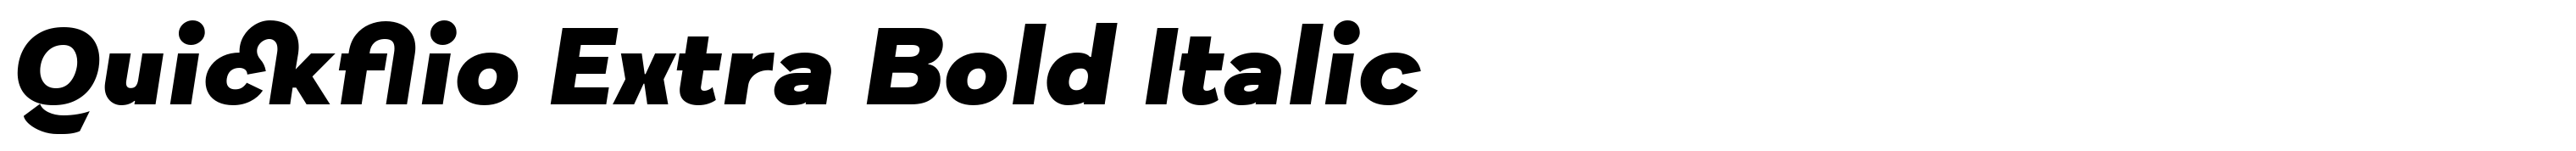 Quickflio Extra Bold Italic